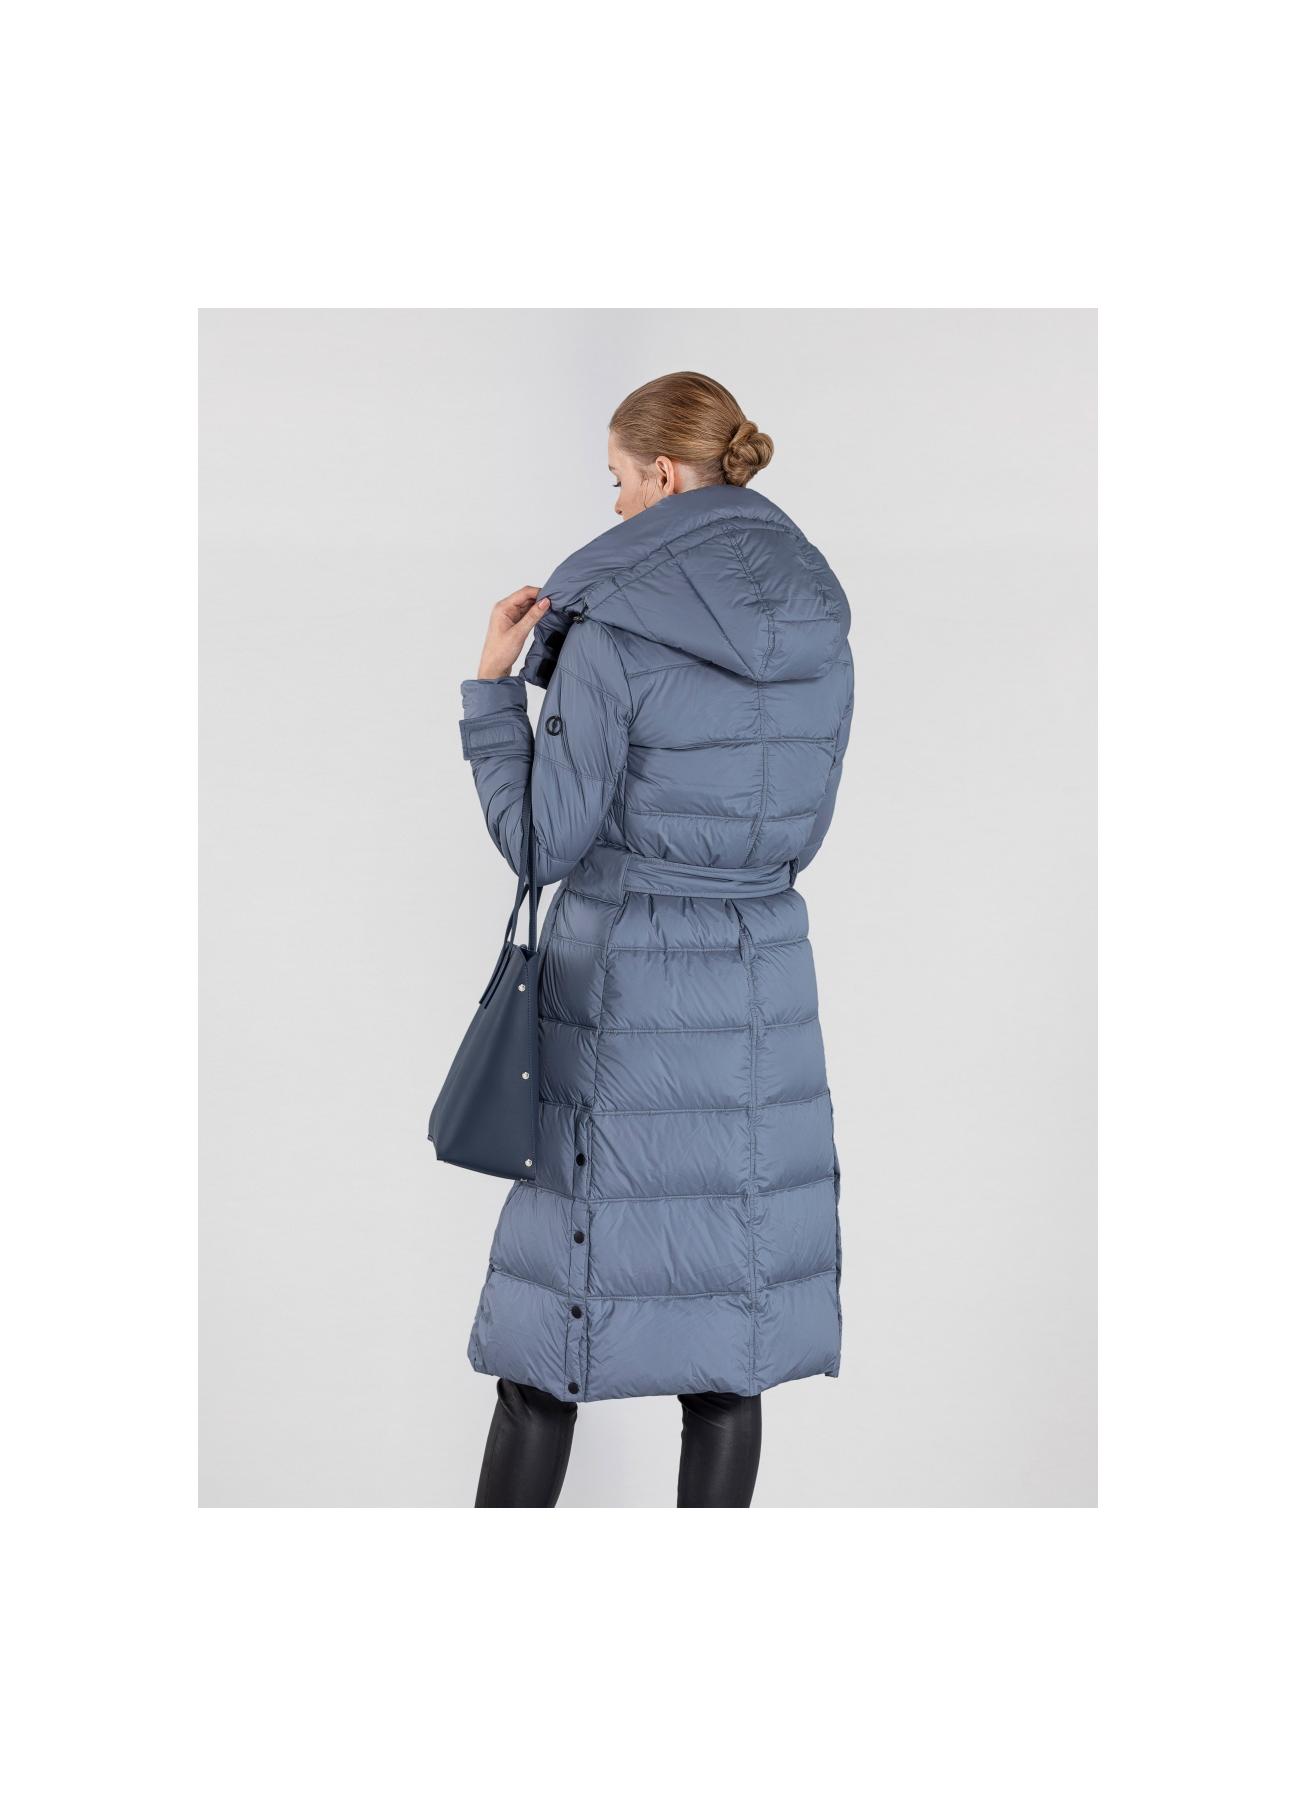 Niebieska zimowa kurtka damska z kapturem KURDT-0268-96(Z20)